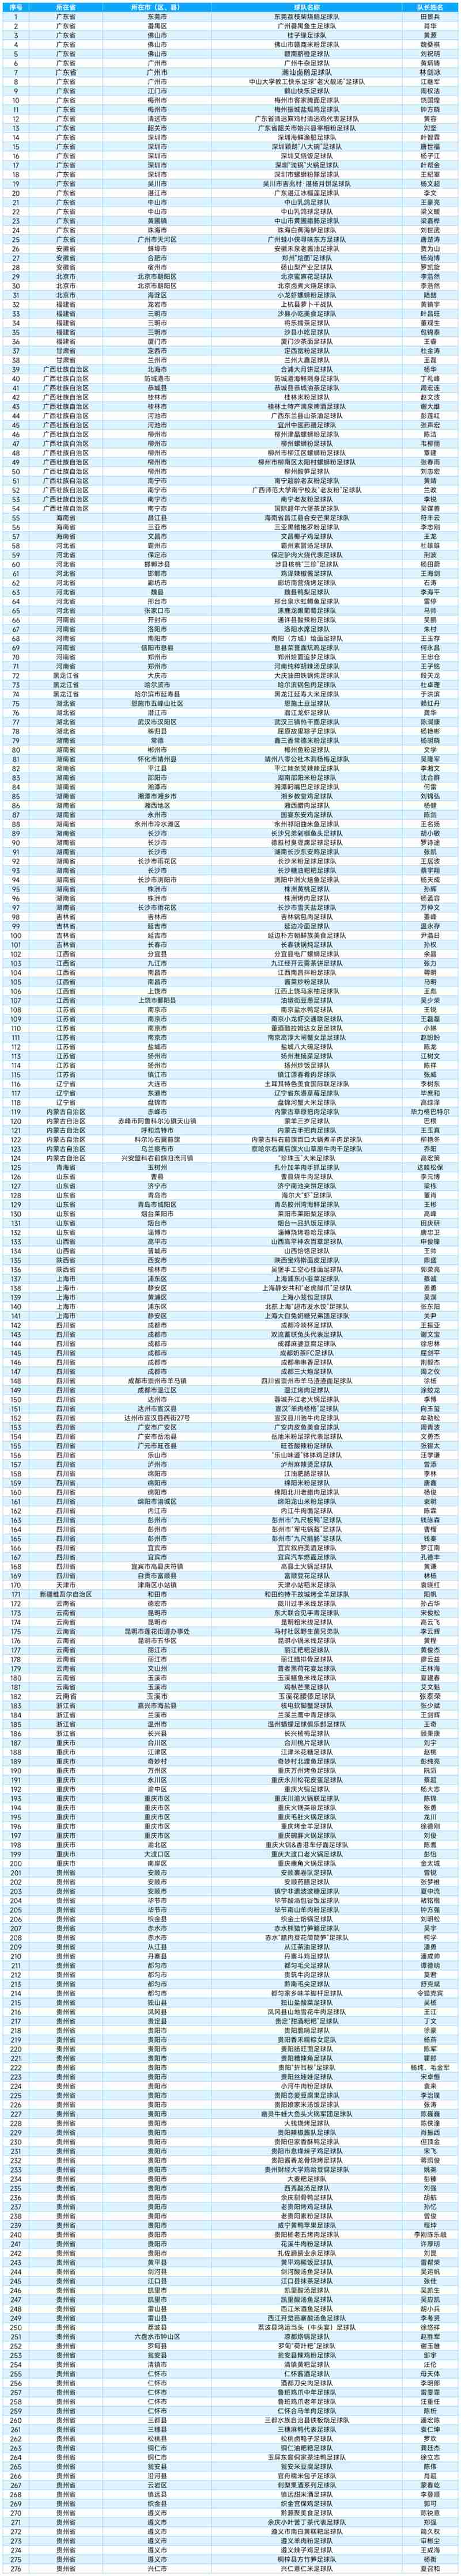 參賽隊伍名單。圖片由榕江縣村超管理中心提供